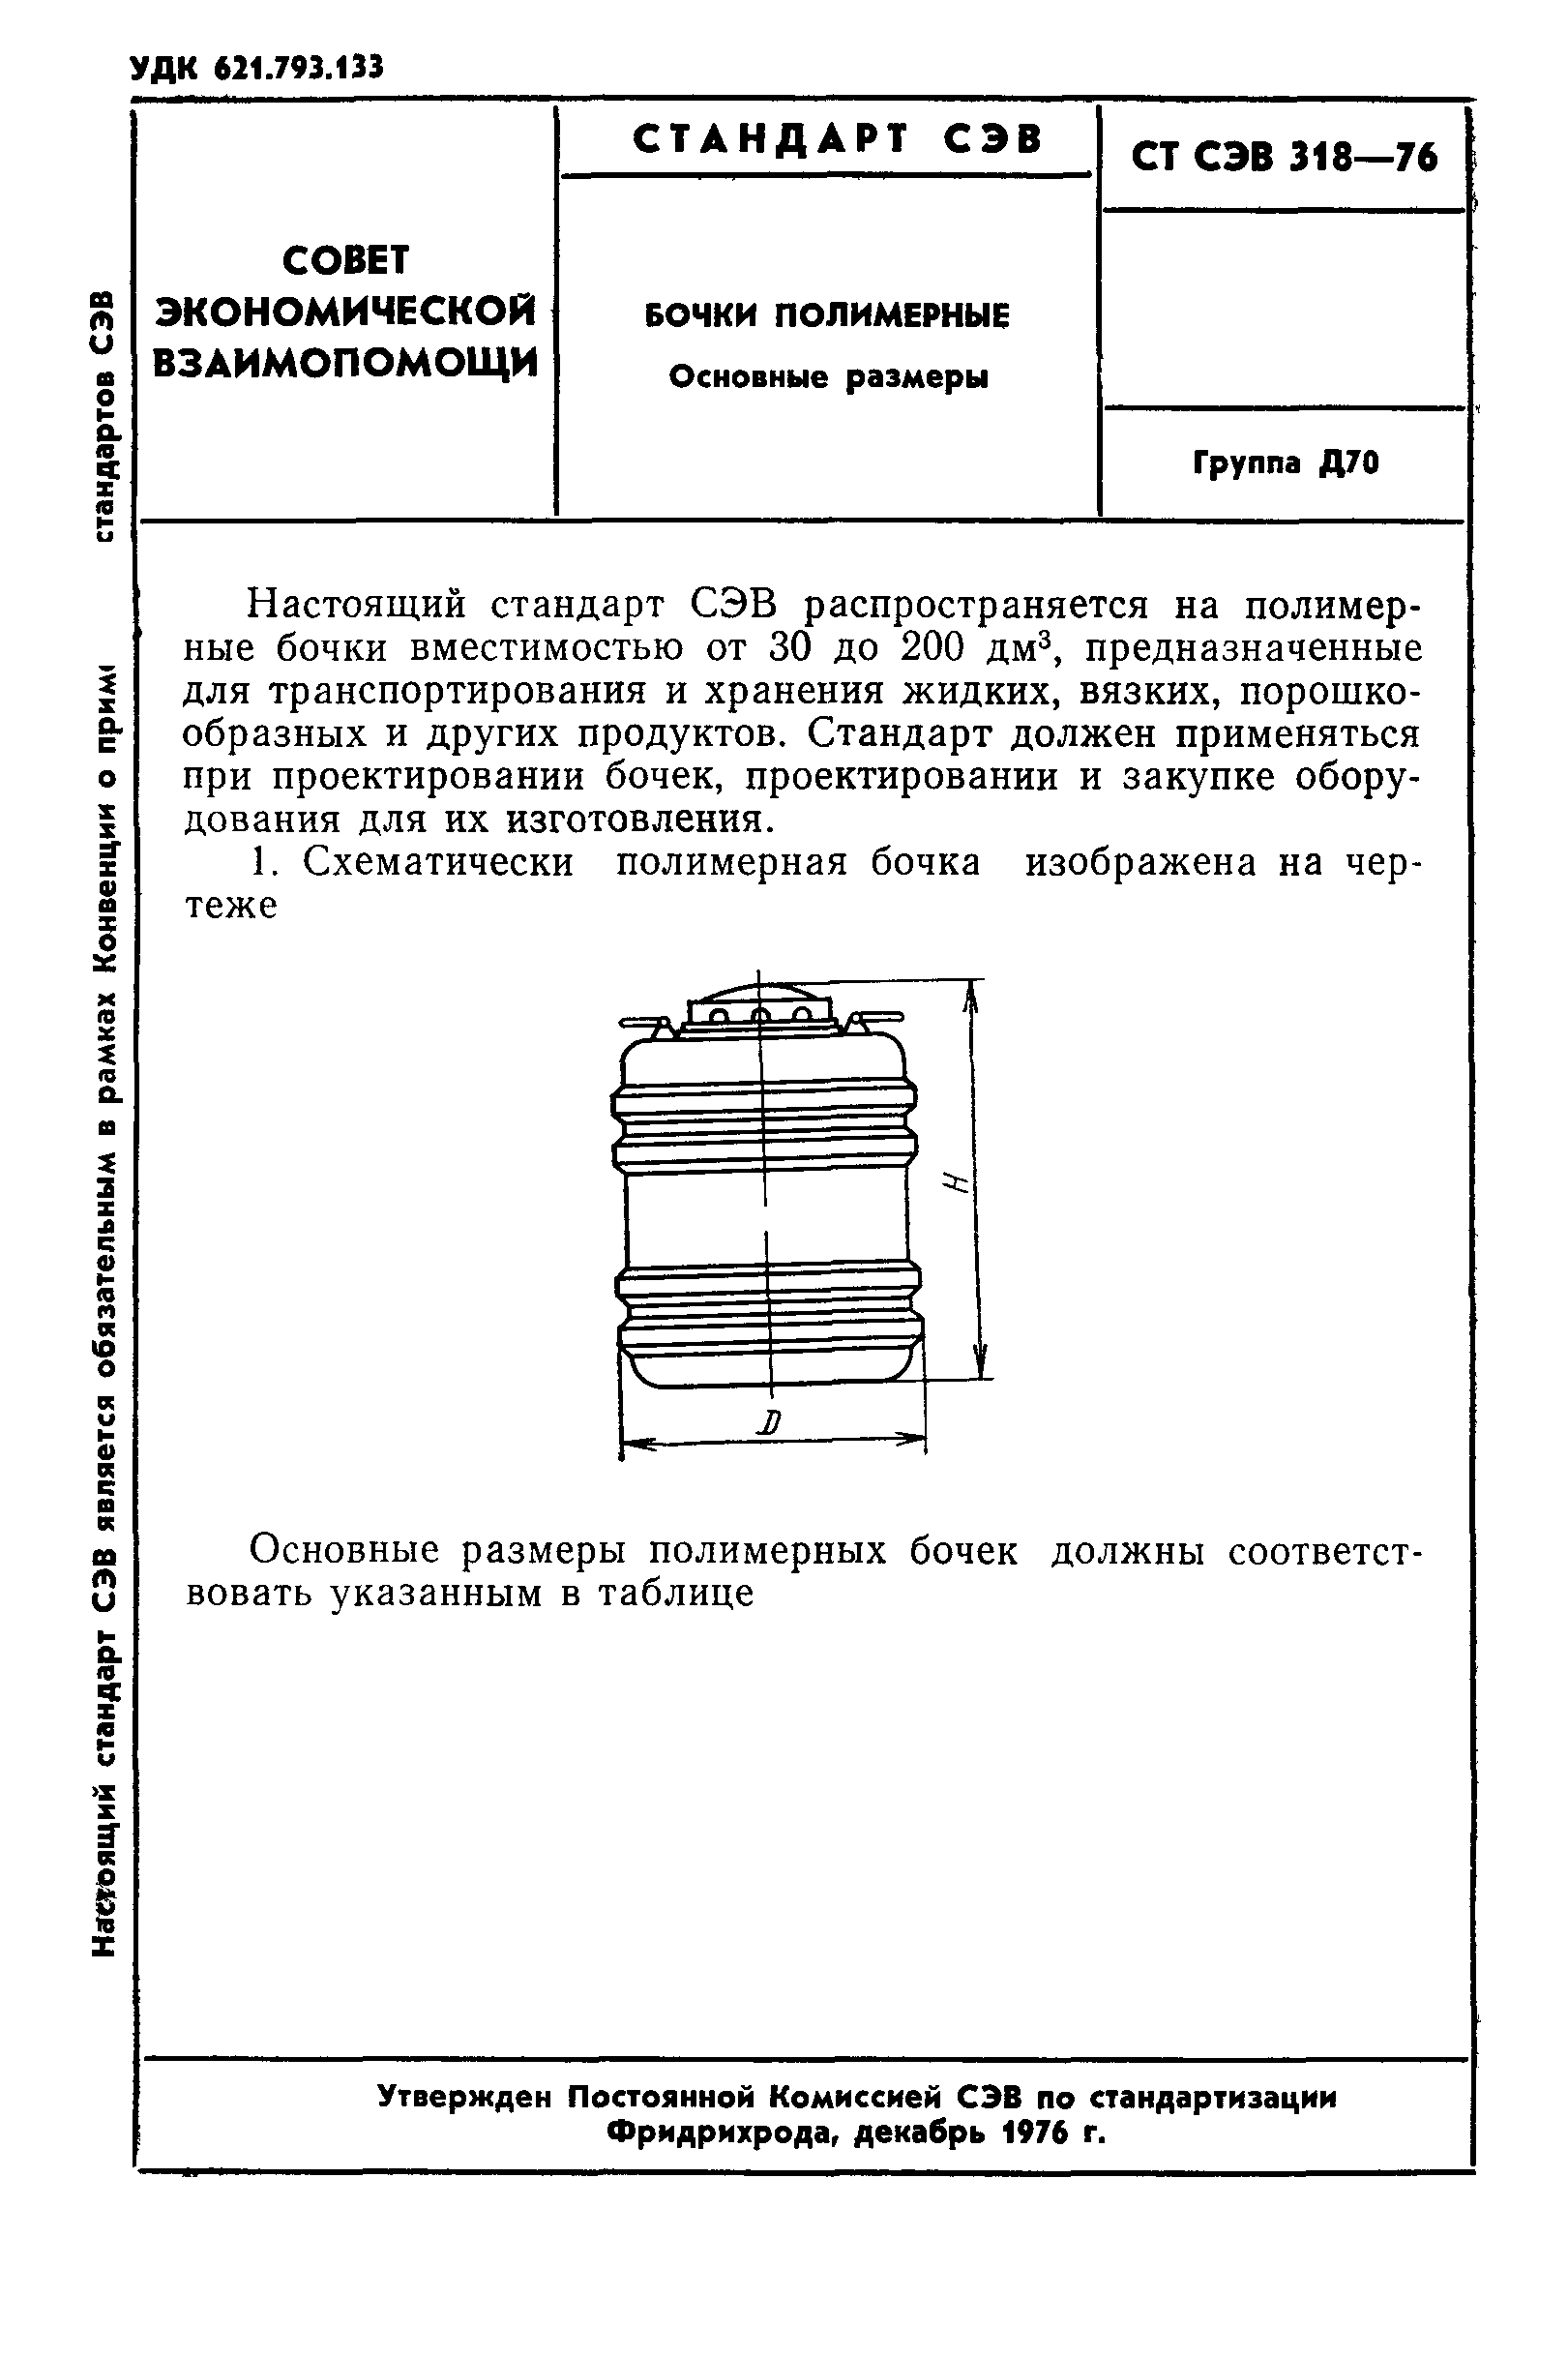 СТ СЭВ 318-76